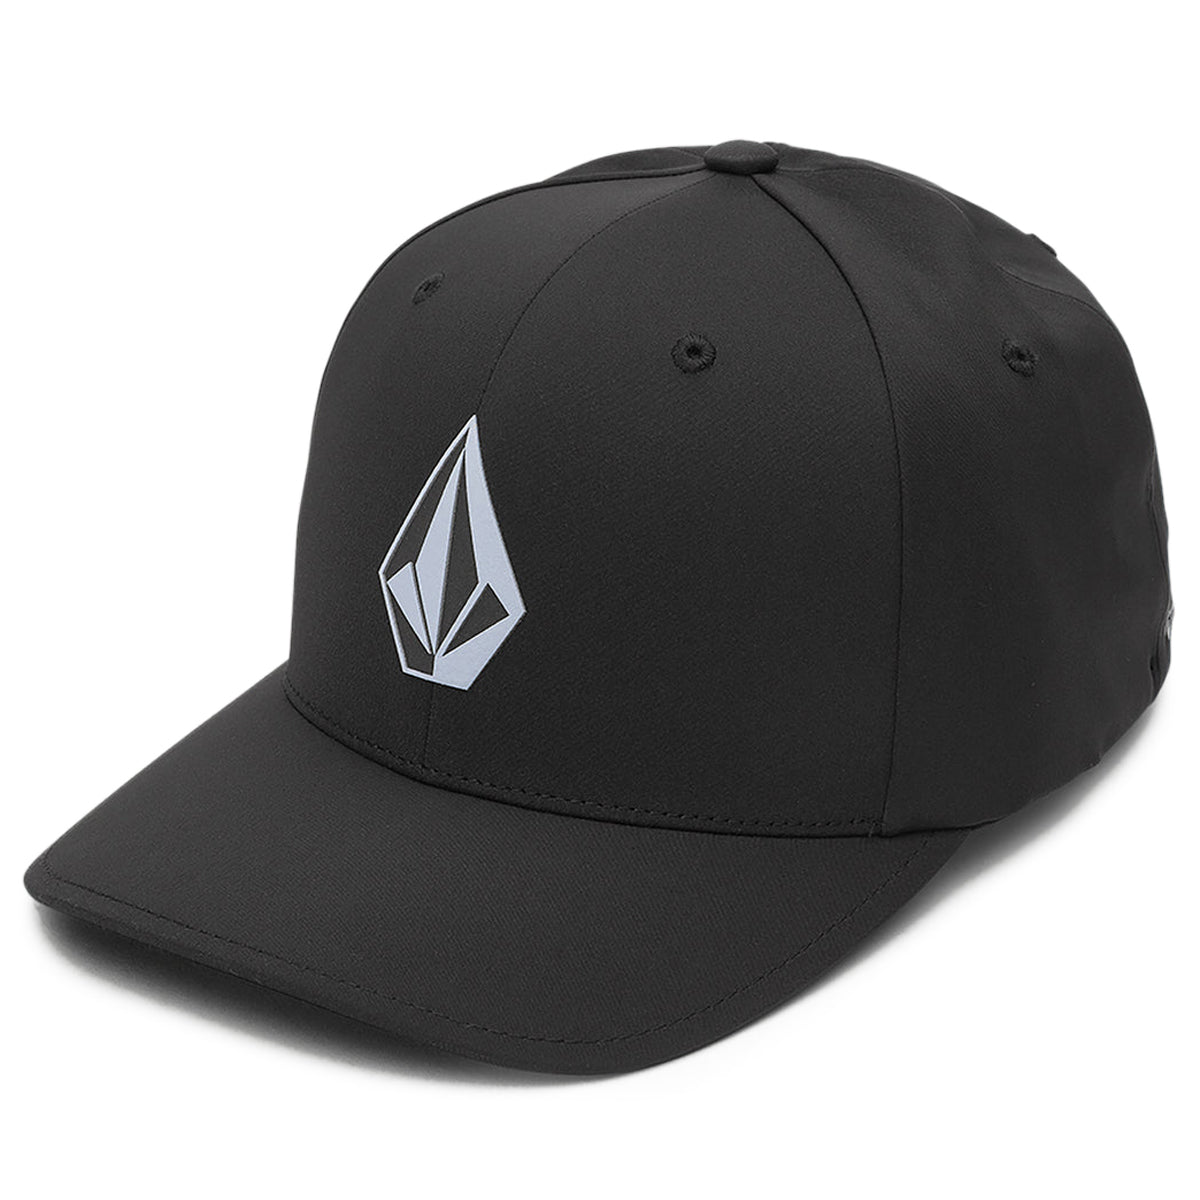 Volcom Stone Tech Flexfit Delta Hat - Black image 1